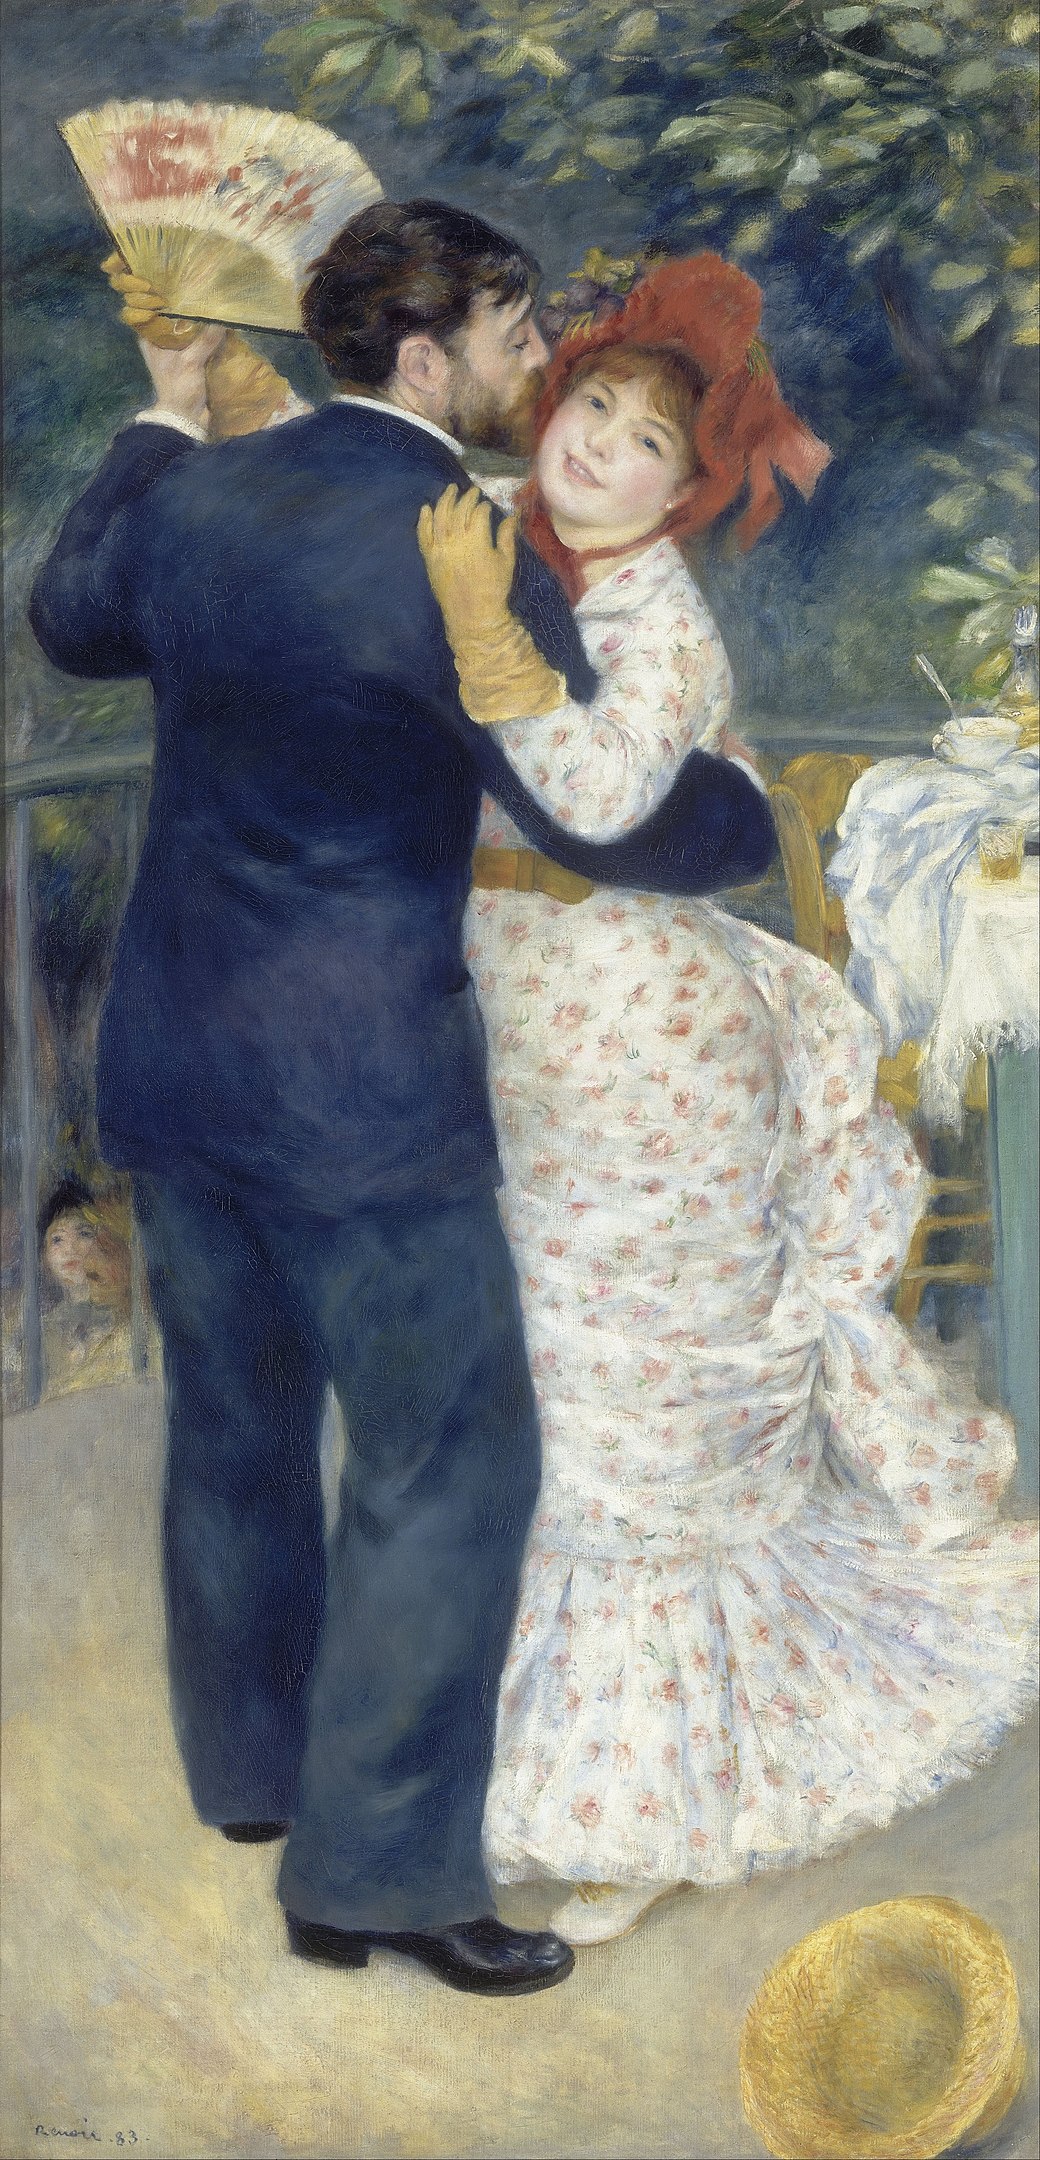 Tanz in der Stadt by Pierre-Auguste Renoir - 1883 - 180 x 90 cm Musée d'Orsay